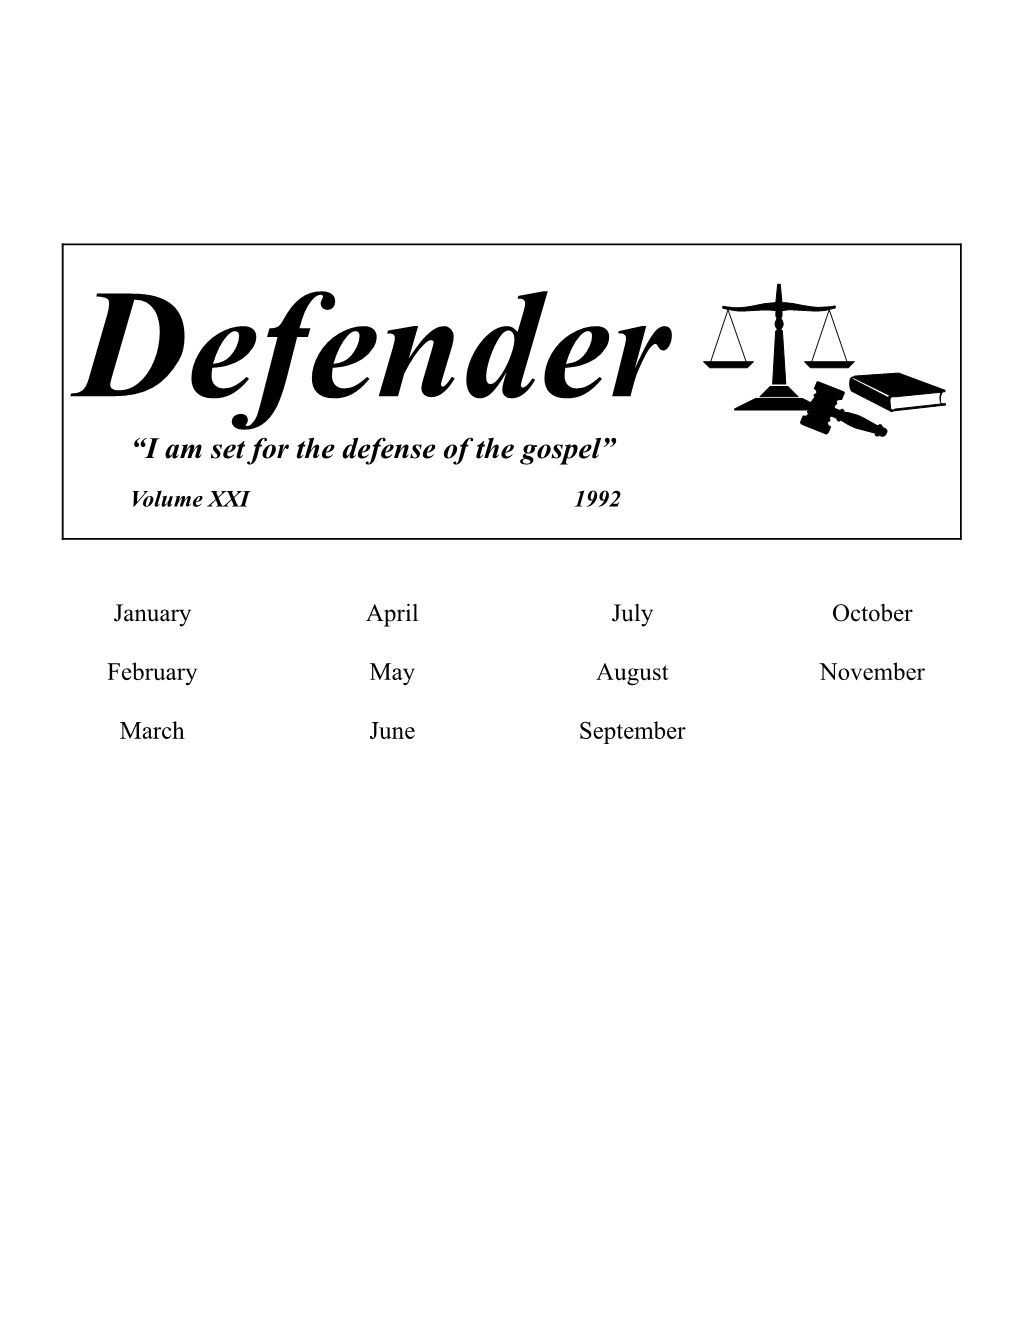 Defender, Vol. XXI, 1992